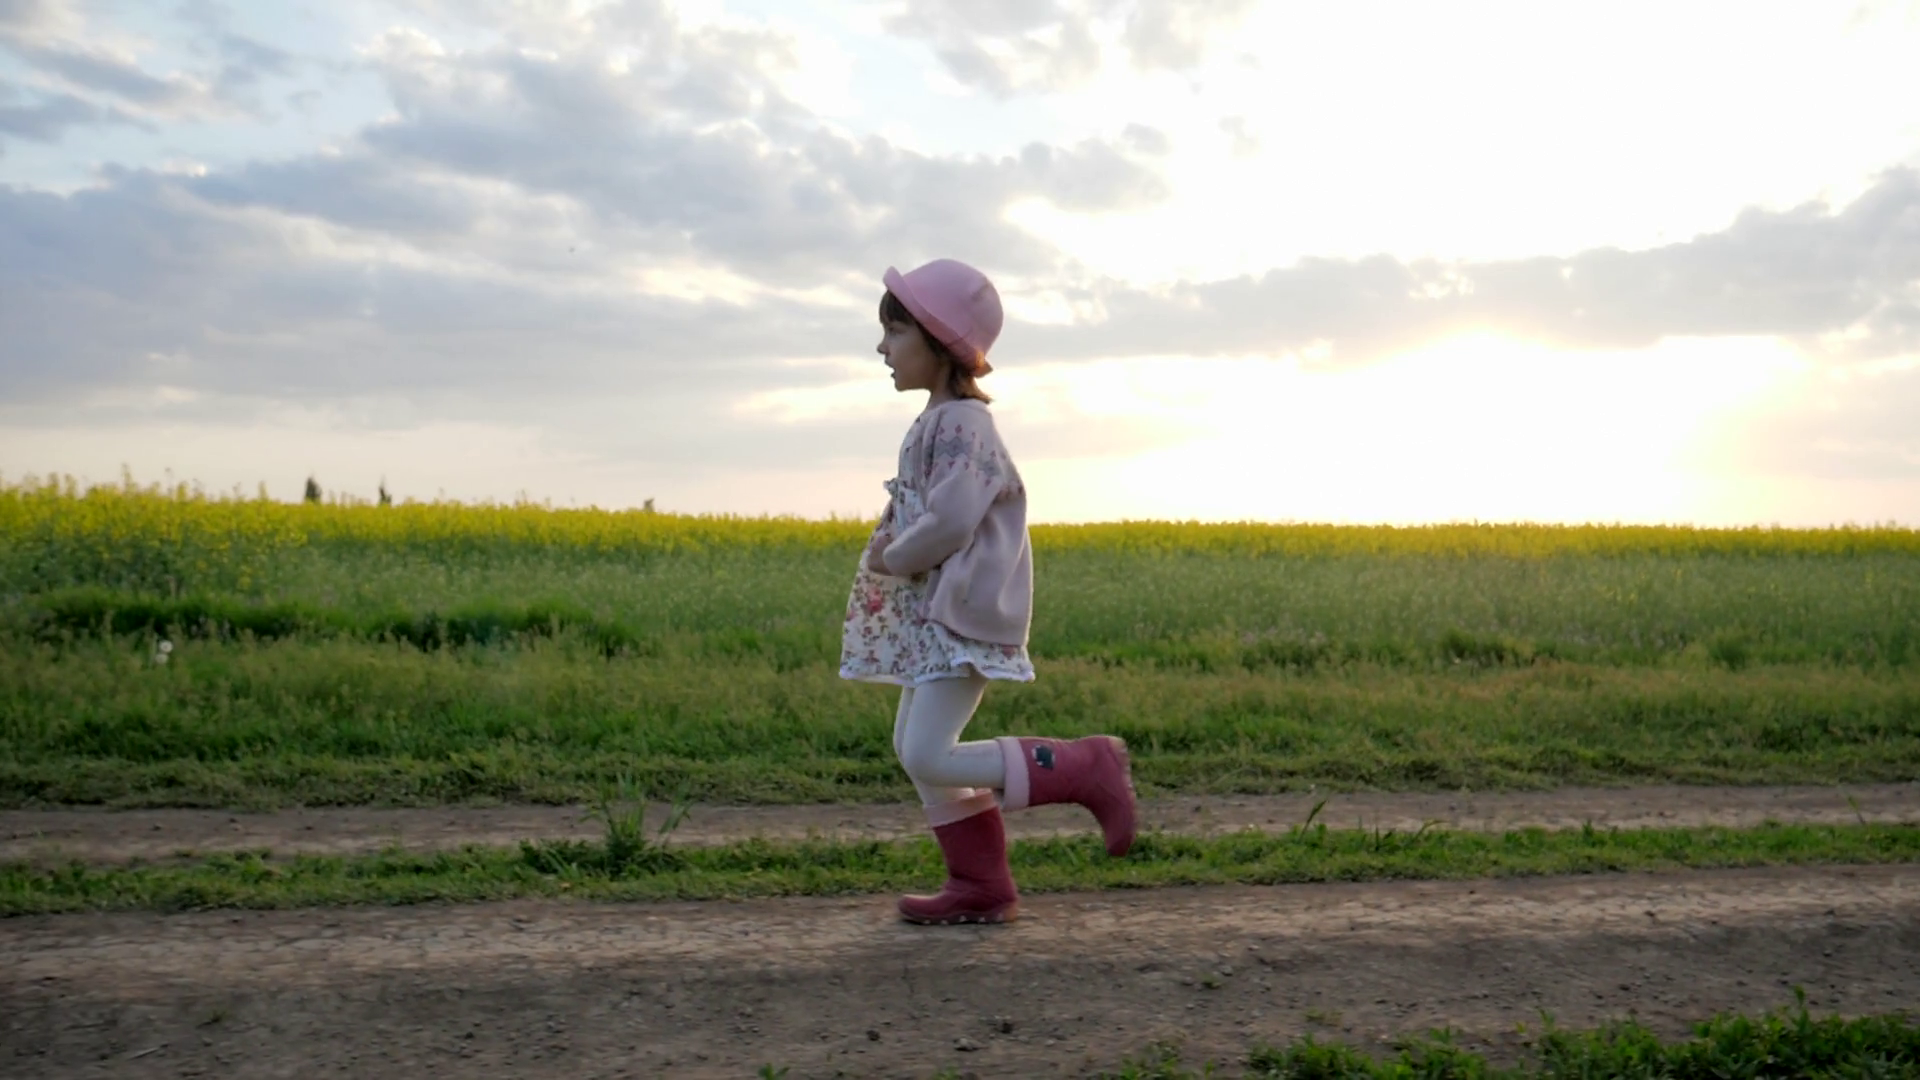 little girl runs along field road, Running child, happy kid having ...